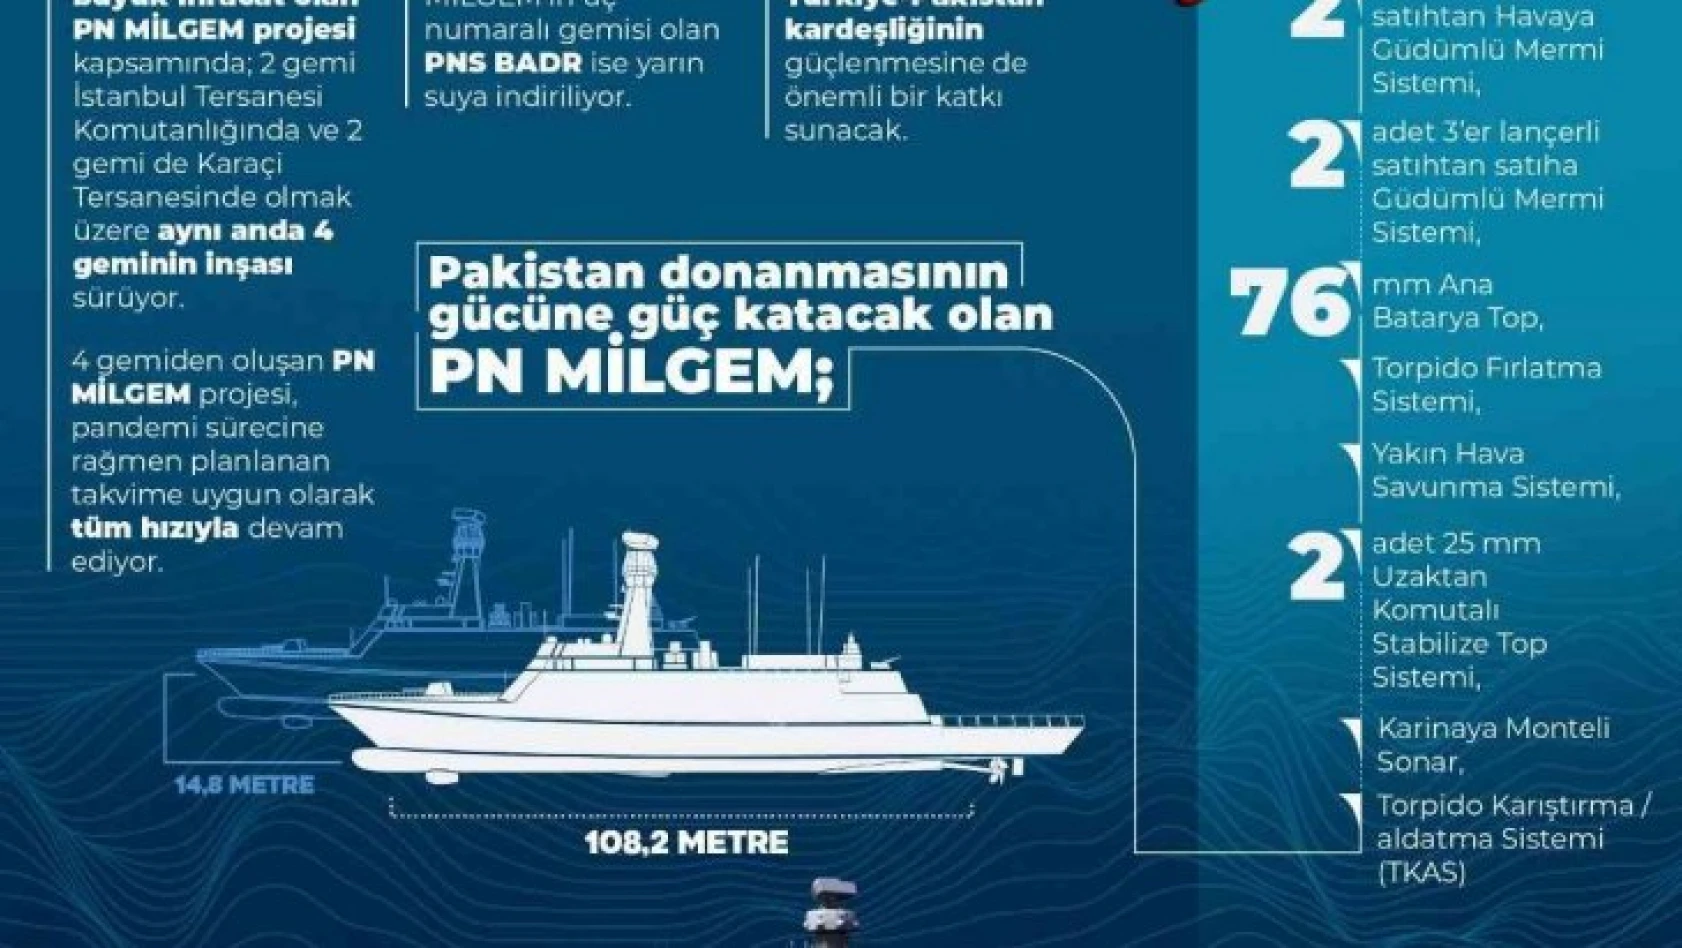 Bakan Akar 'PNS Badr'ın Pakistan Deniz Kuvvetleri'ne teslim törenine katılacak